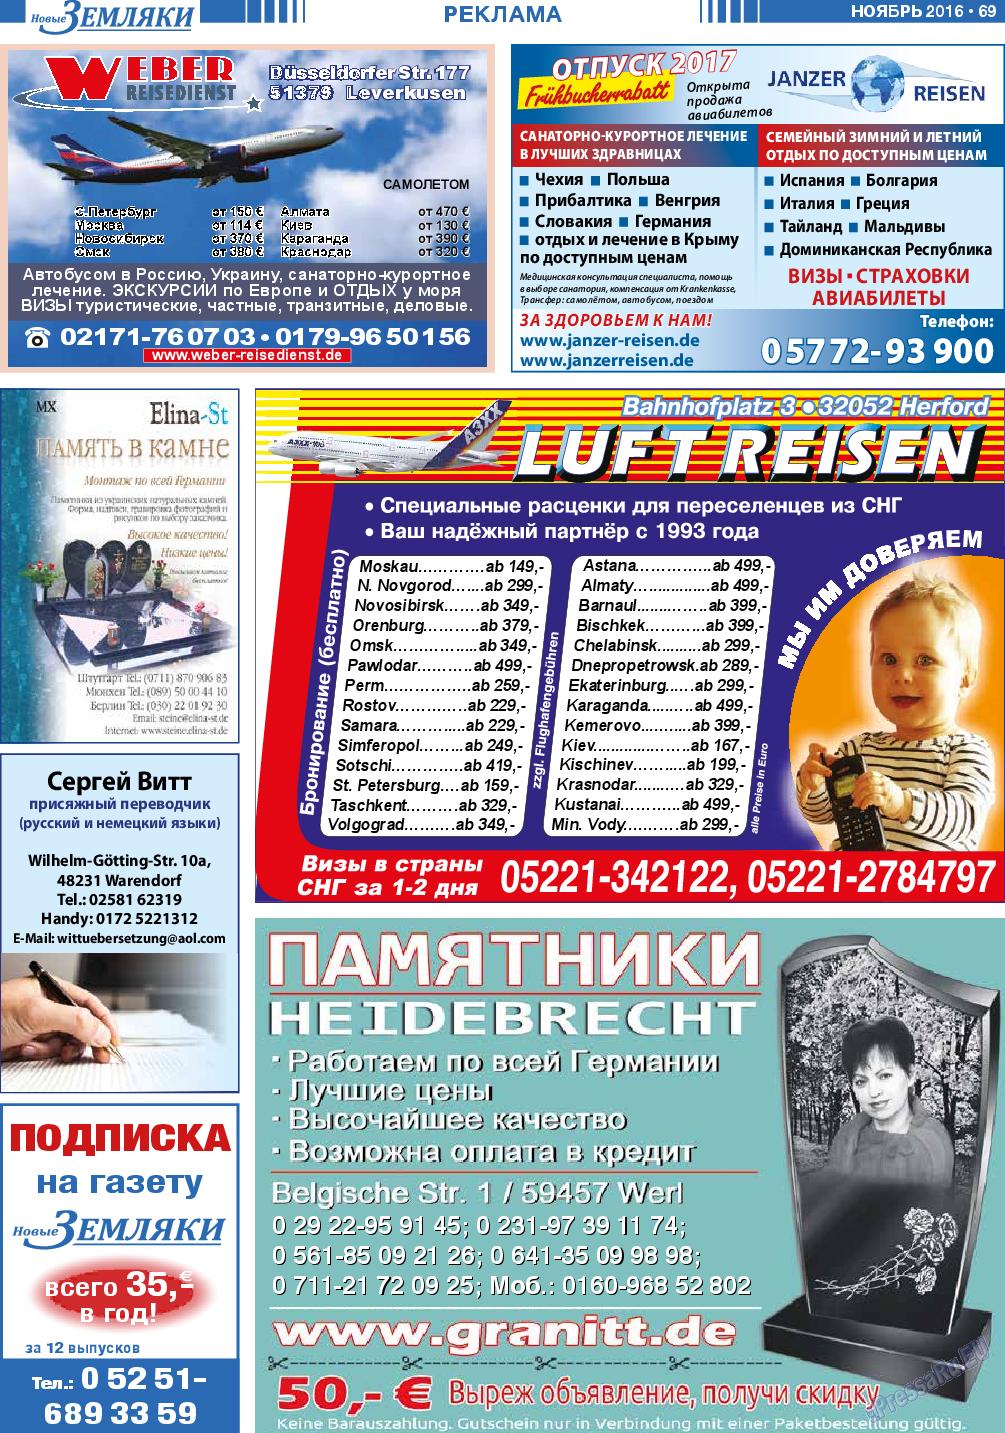 Новые Земляки (газета). 2016 год, номер 11, стр. 69